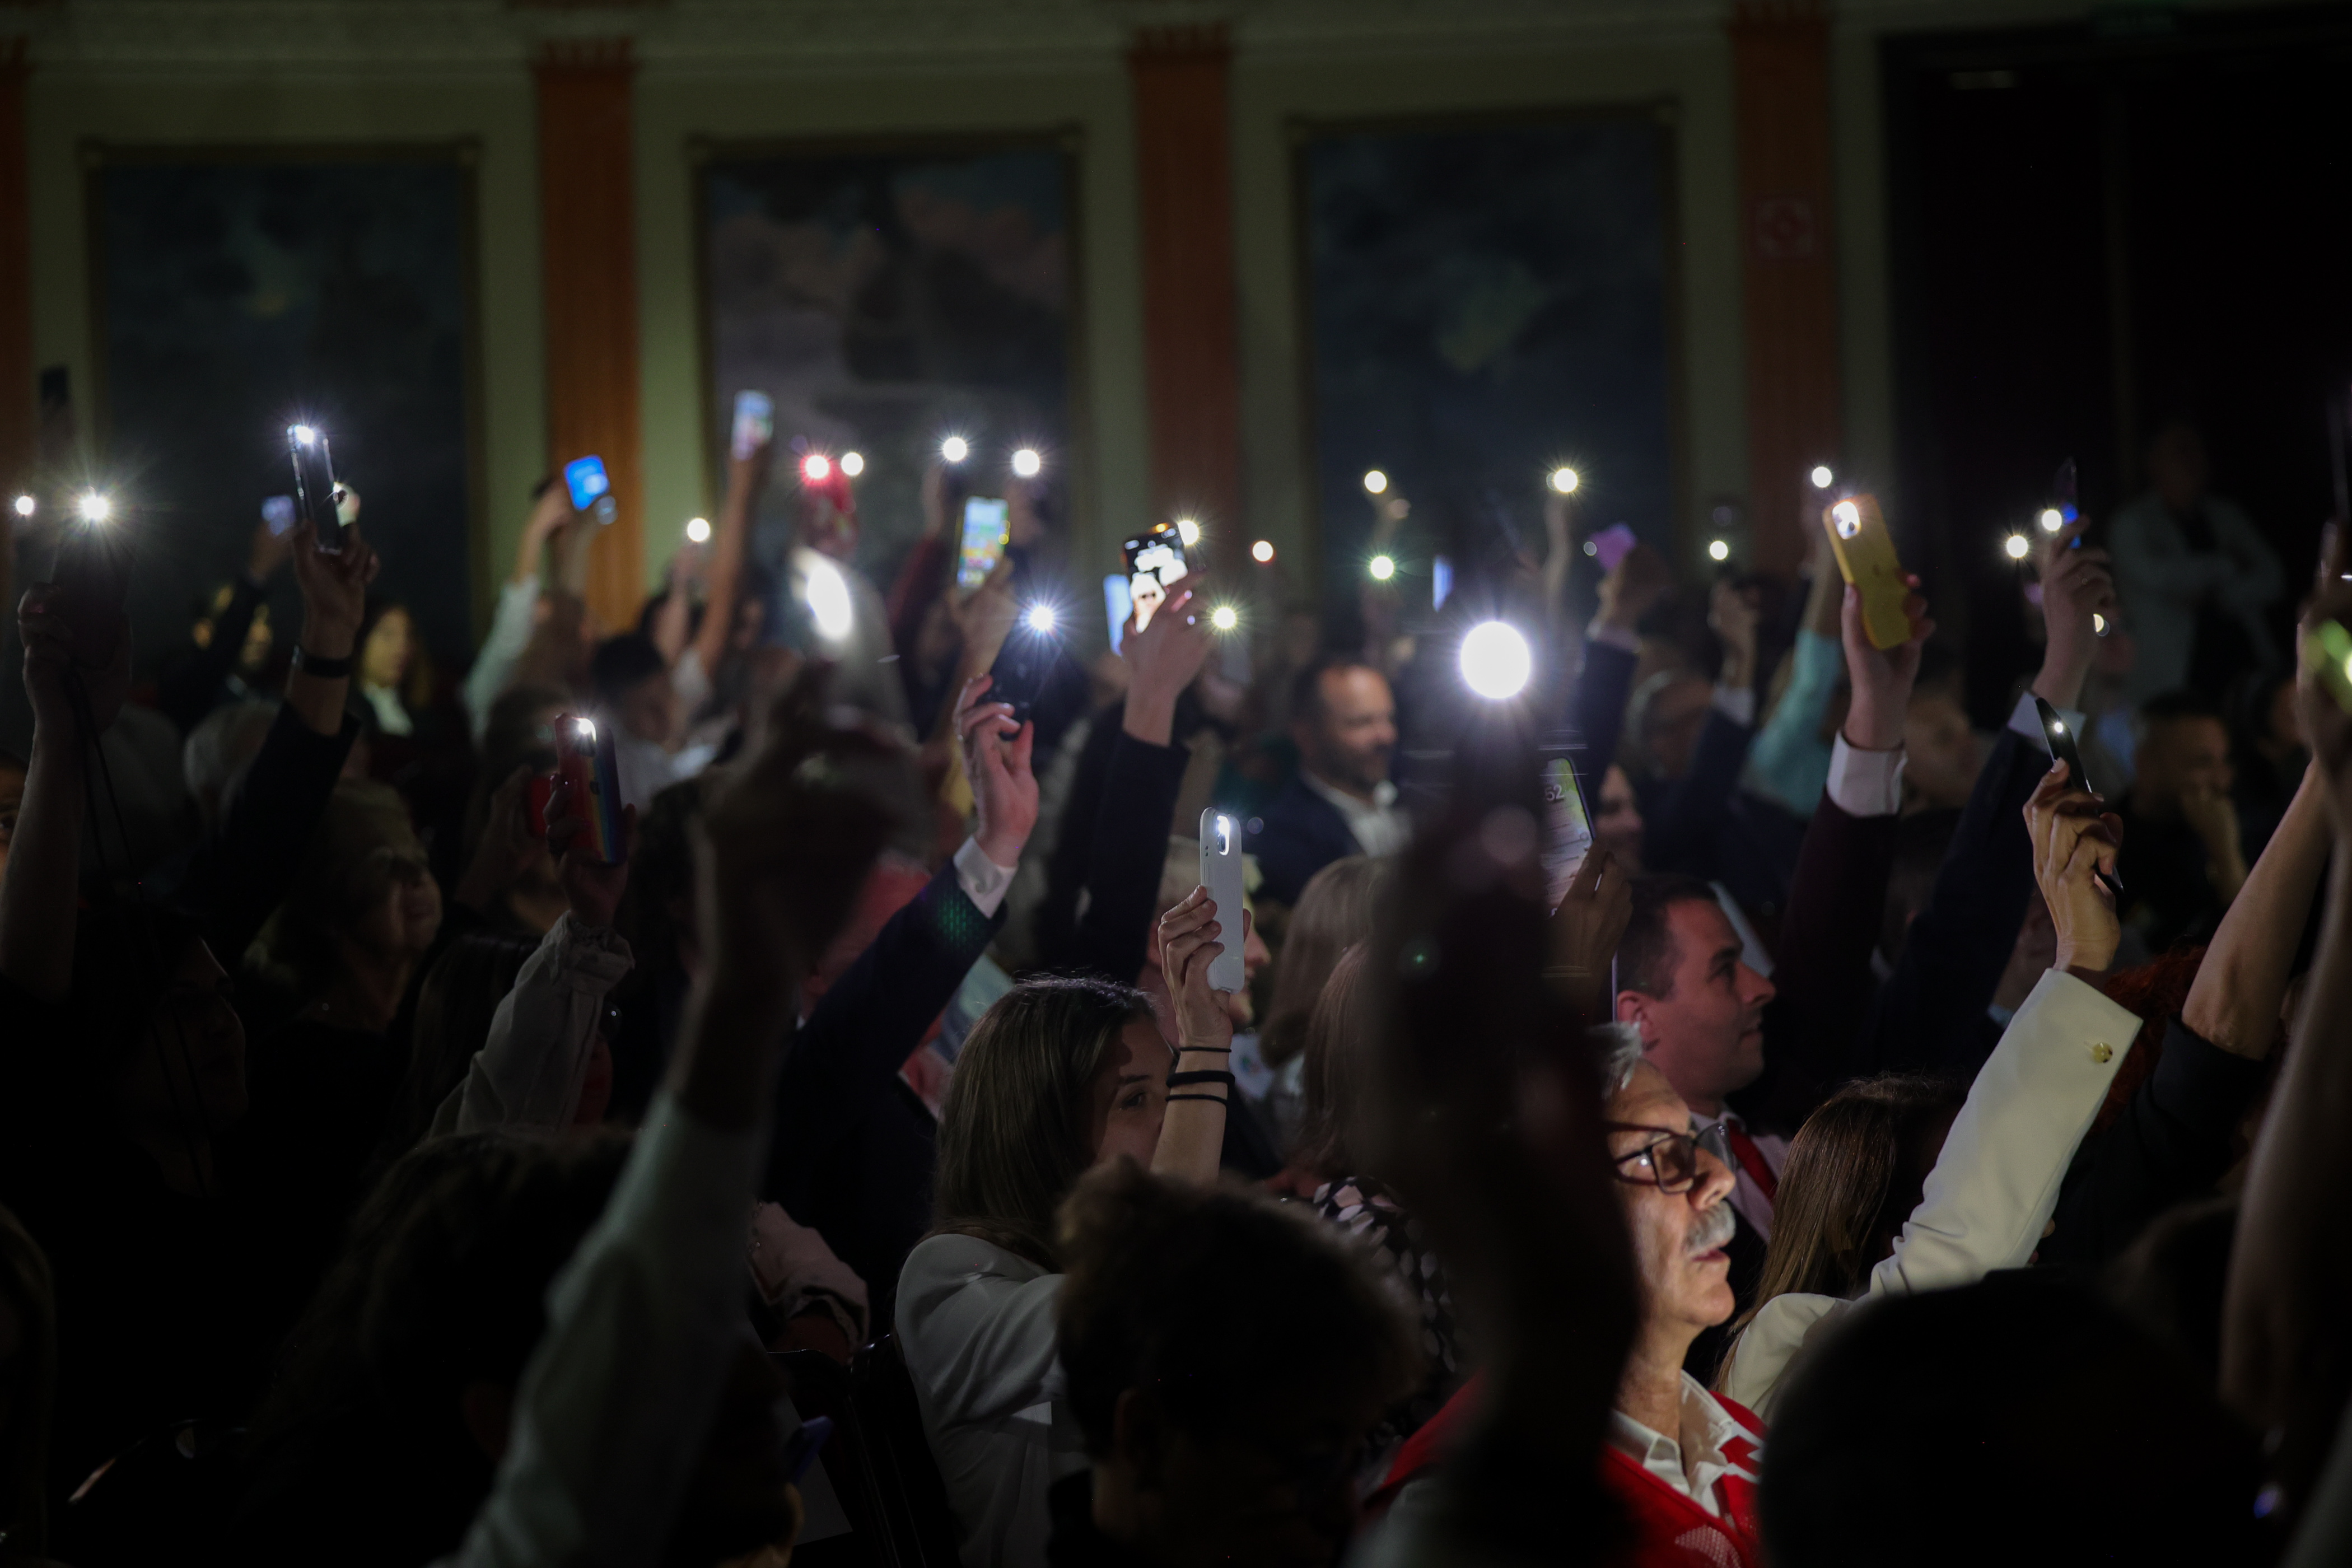 Linternas de los móviles del público encendidas en un auditorio oscuro